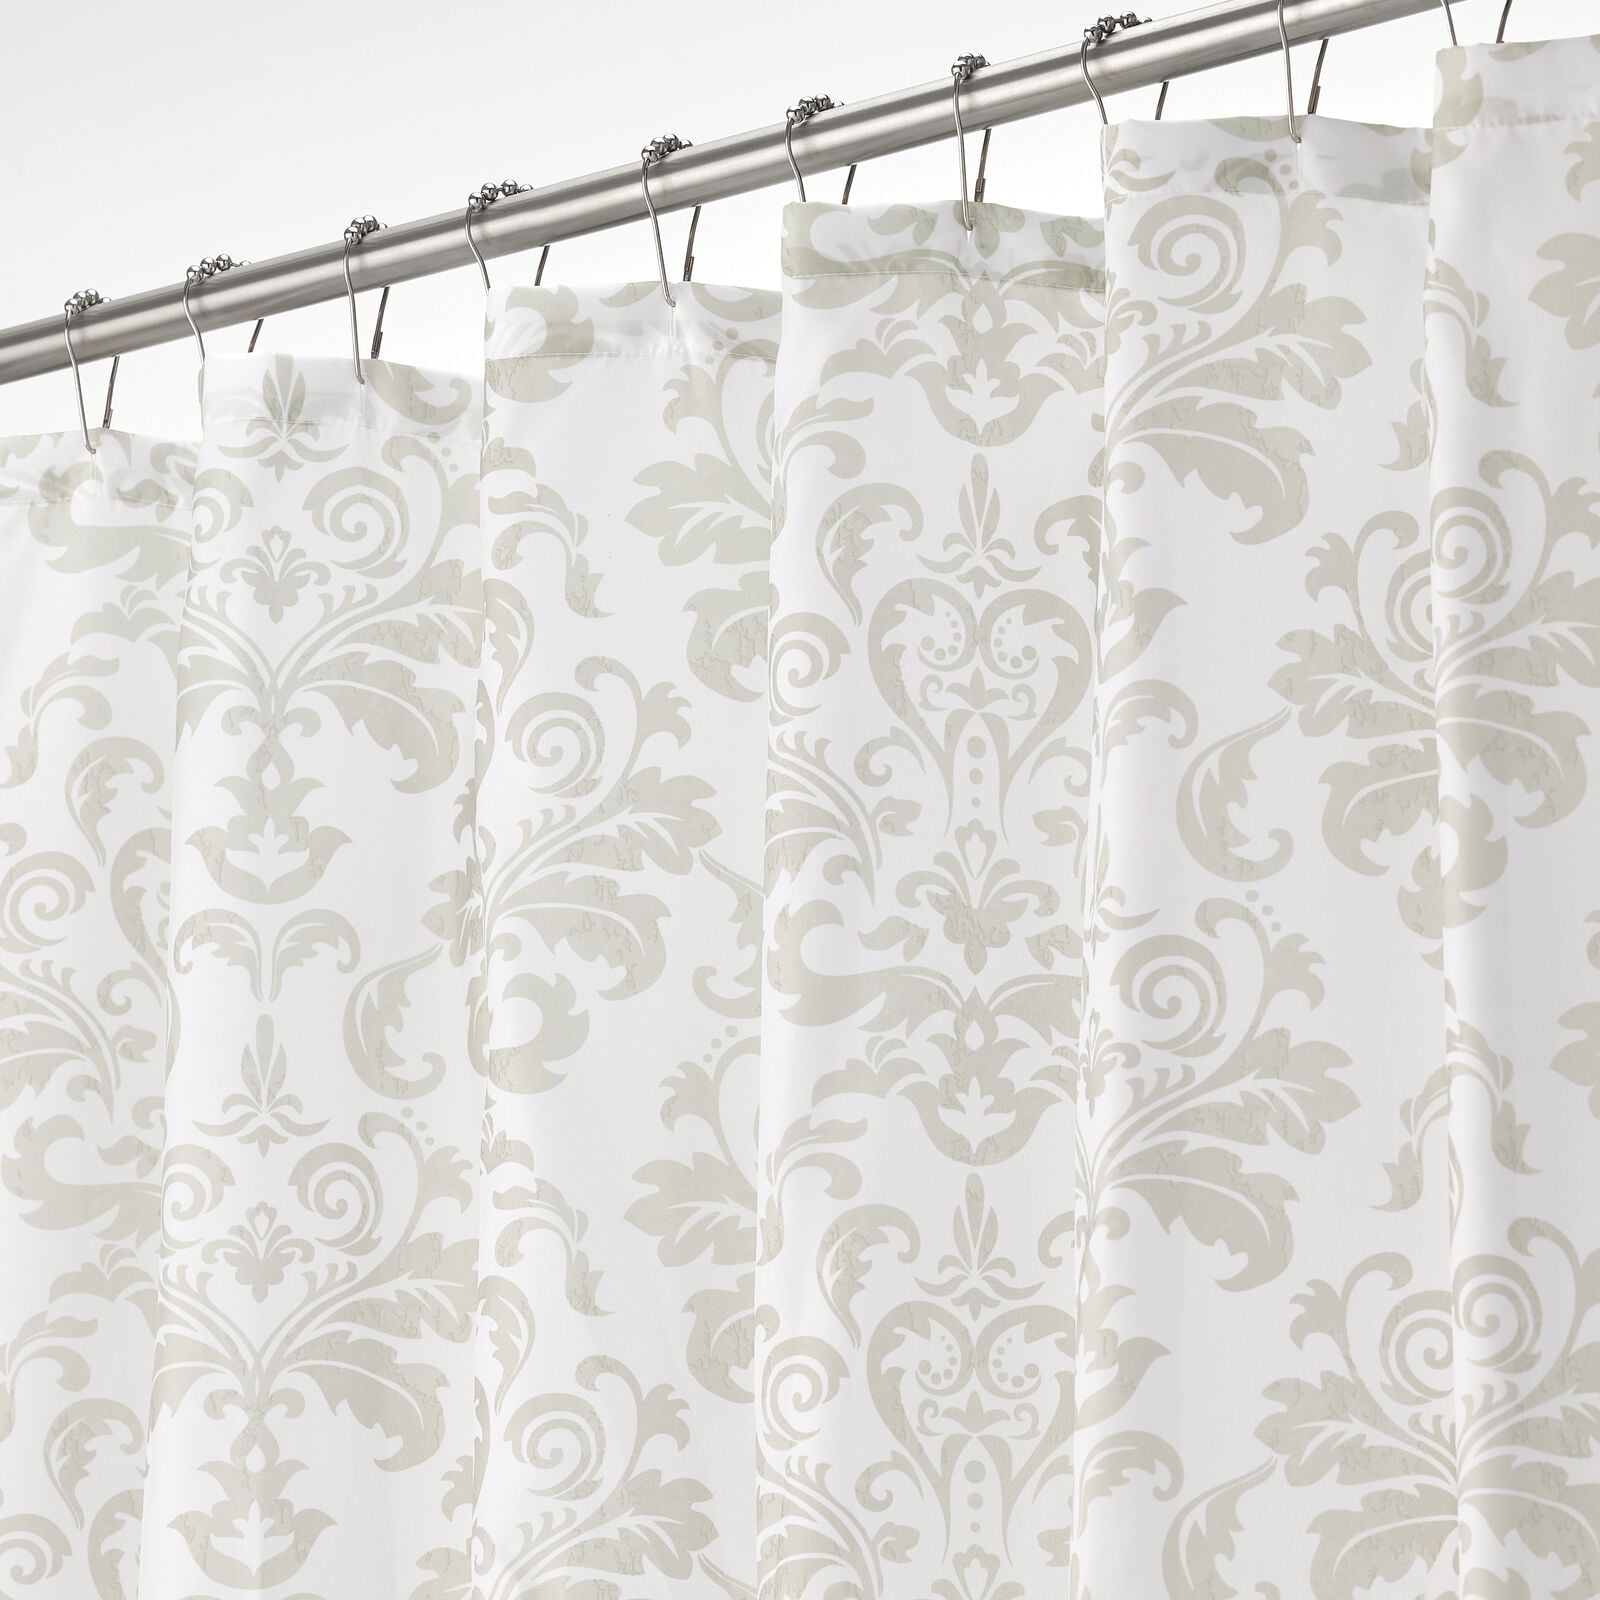 72" x 72" mDesign Linear Print Fabric Shower Curtain Earthtone/Peach 